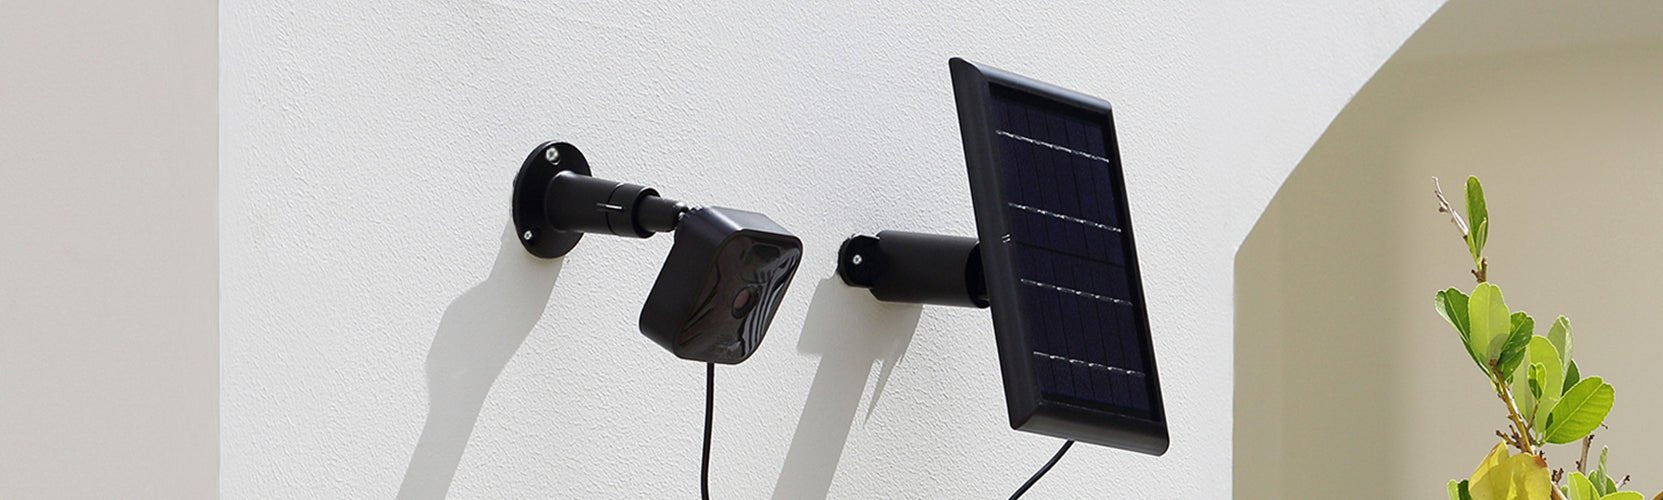 Cómo configurar el soporte Blink Solar Panel — Blink Support